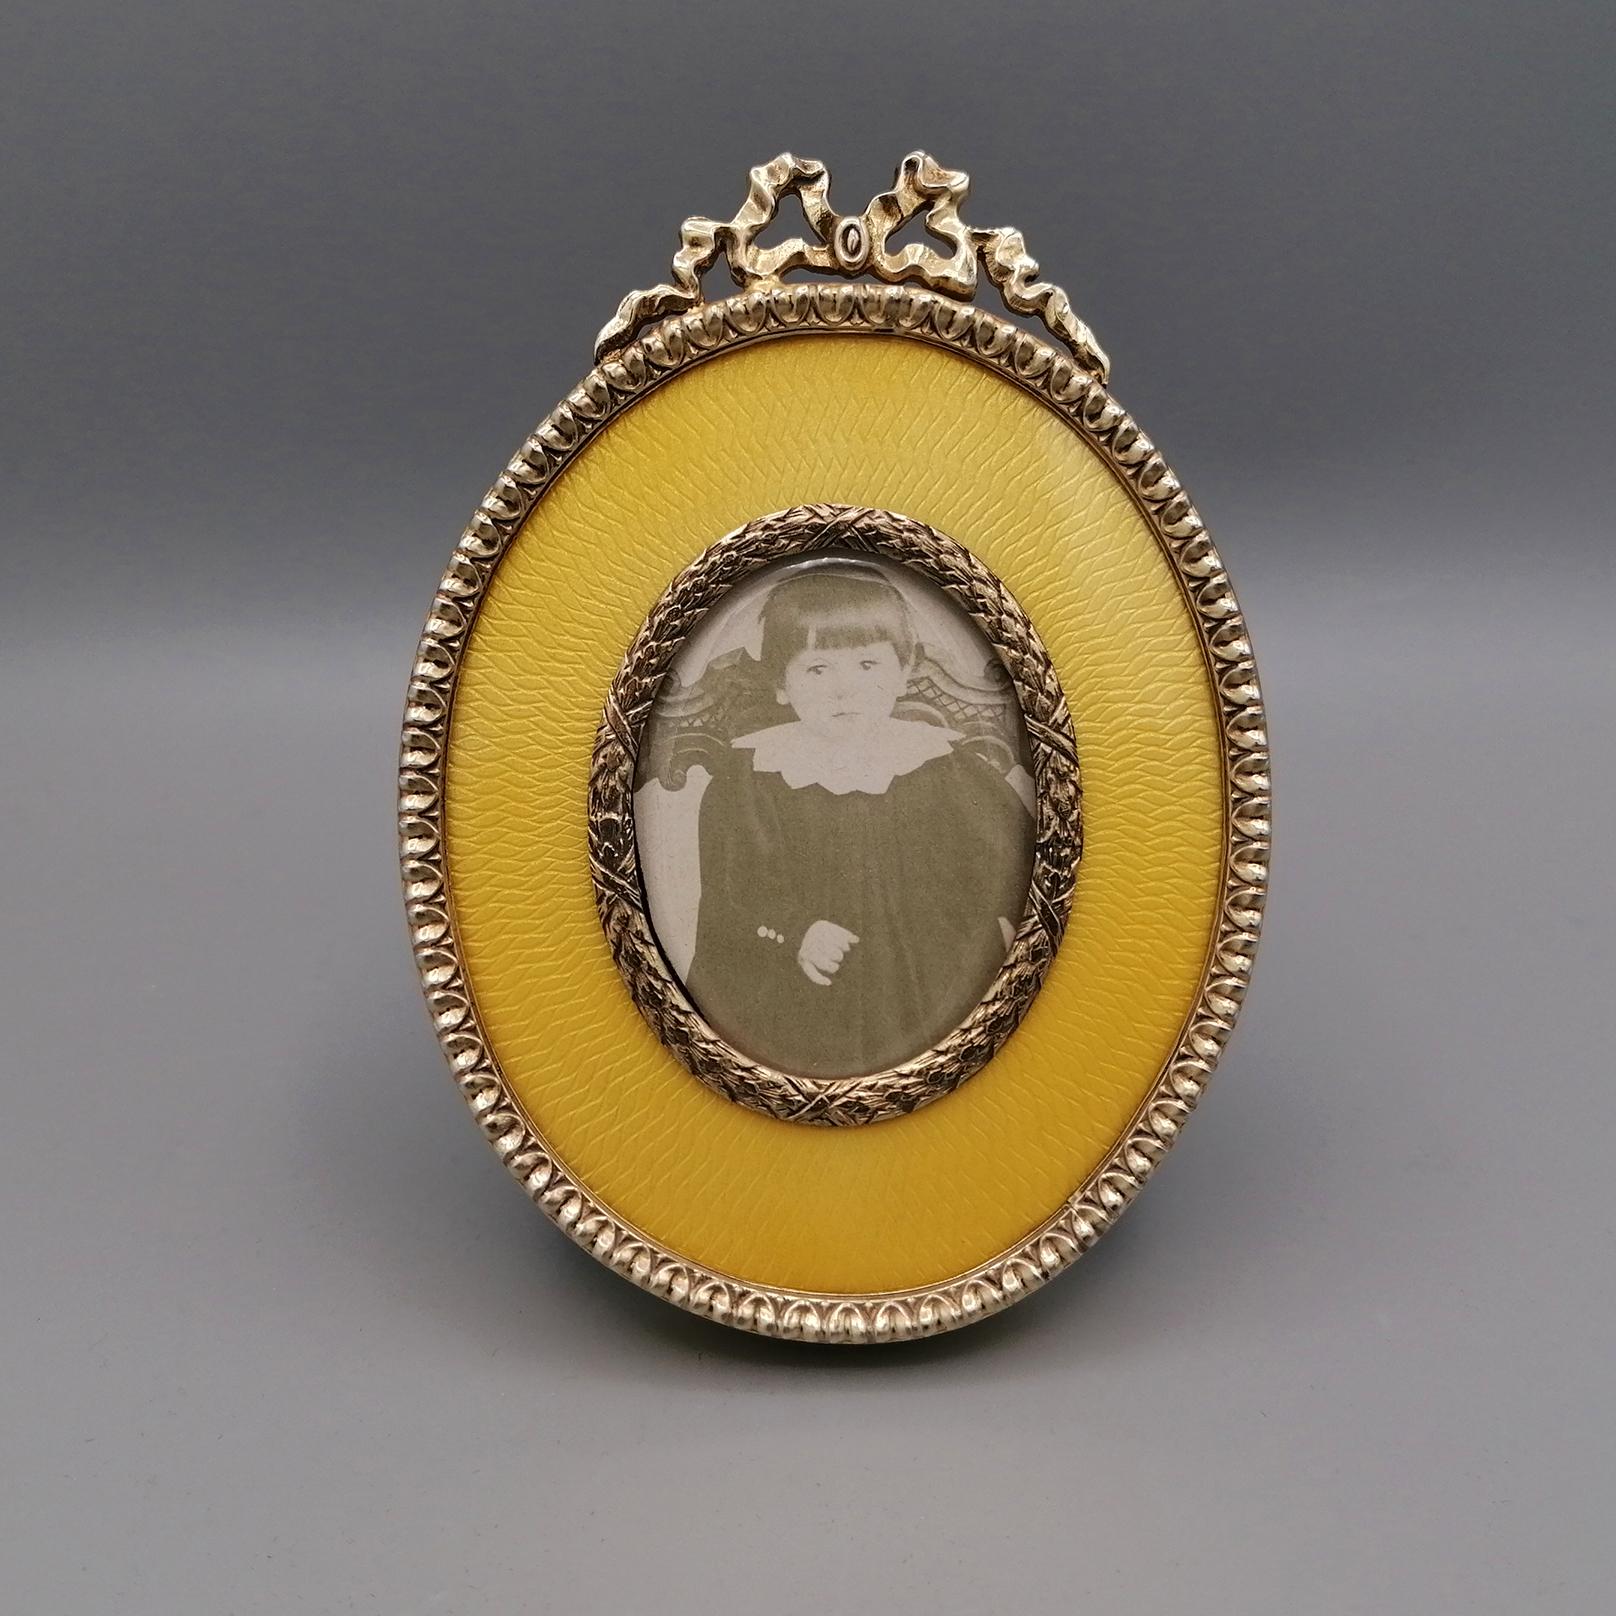 Cadre ovale de style Fabergè en argent 925/1000 doré avec émail cuit jaune translucide sur guilloché et ruban sur la partie supérieure.
12x8,5 cm
photo 5,5x4 cm
Les figurines sont peintes à la main sur une base d'émail homogène généralement